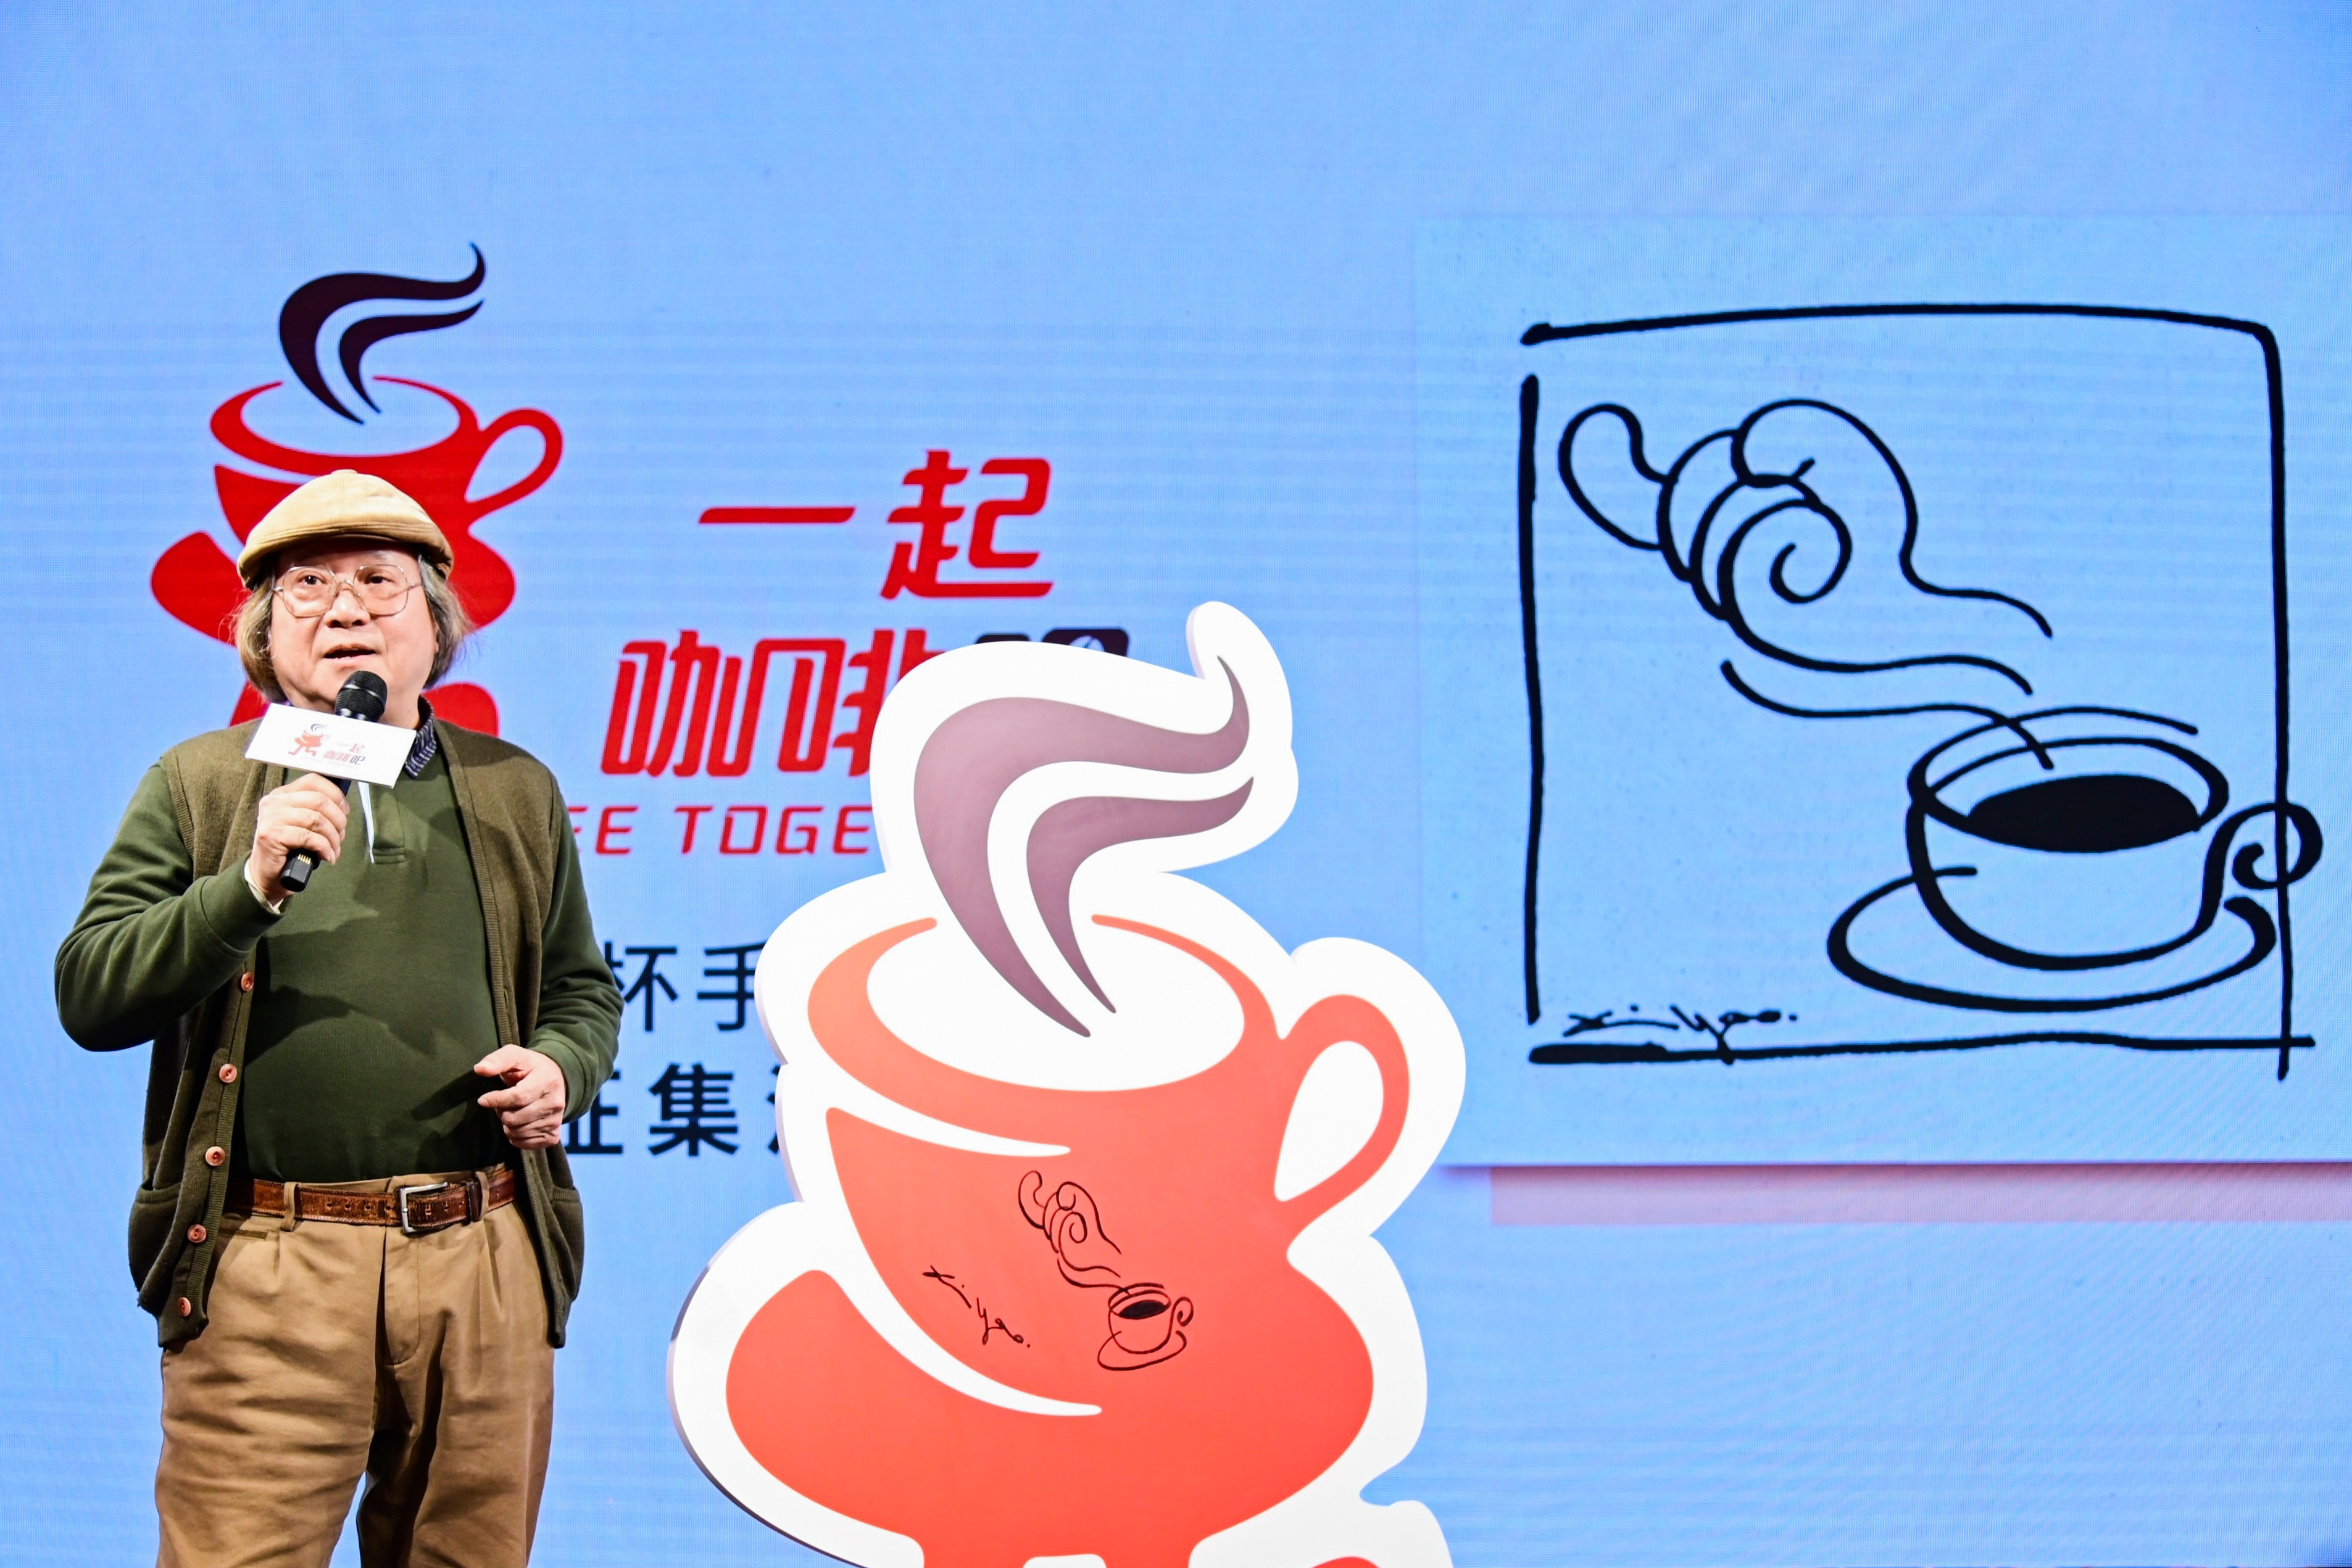 上海市美术家协会主席郑辛遥创作联名咖啡杯手绘图案全球征集活动001号作品